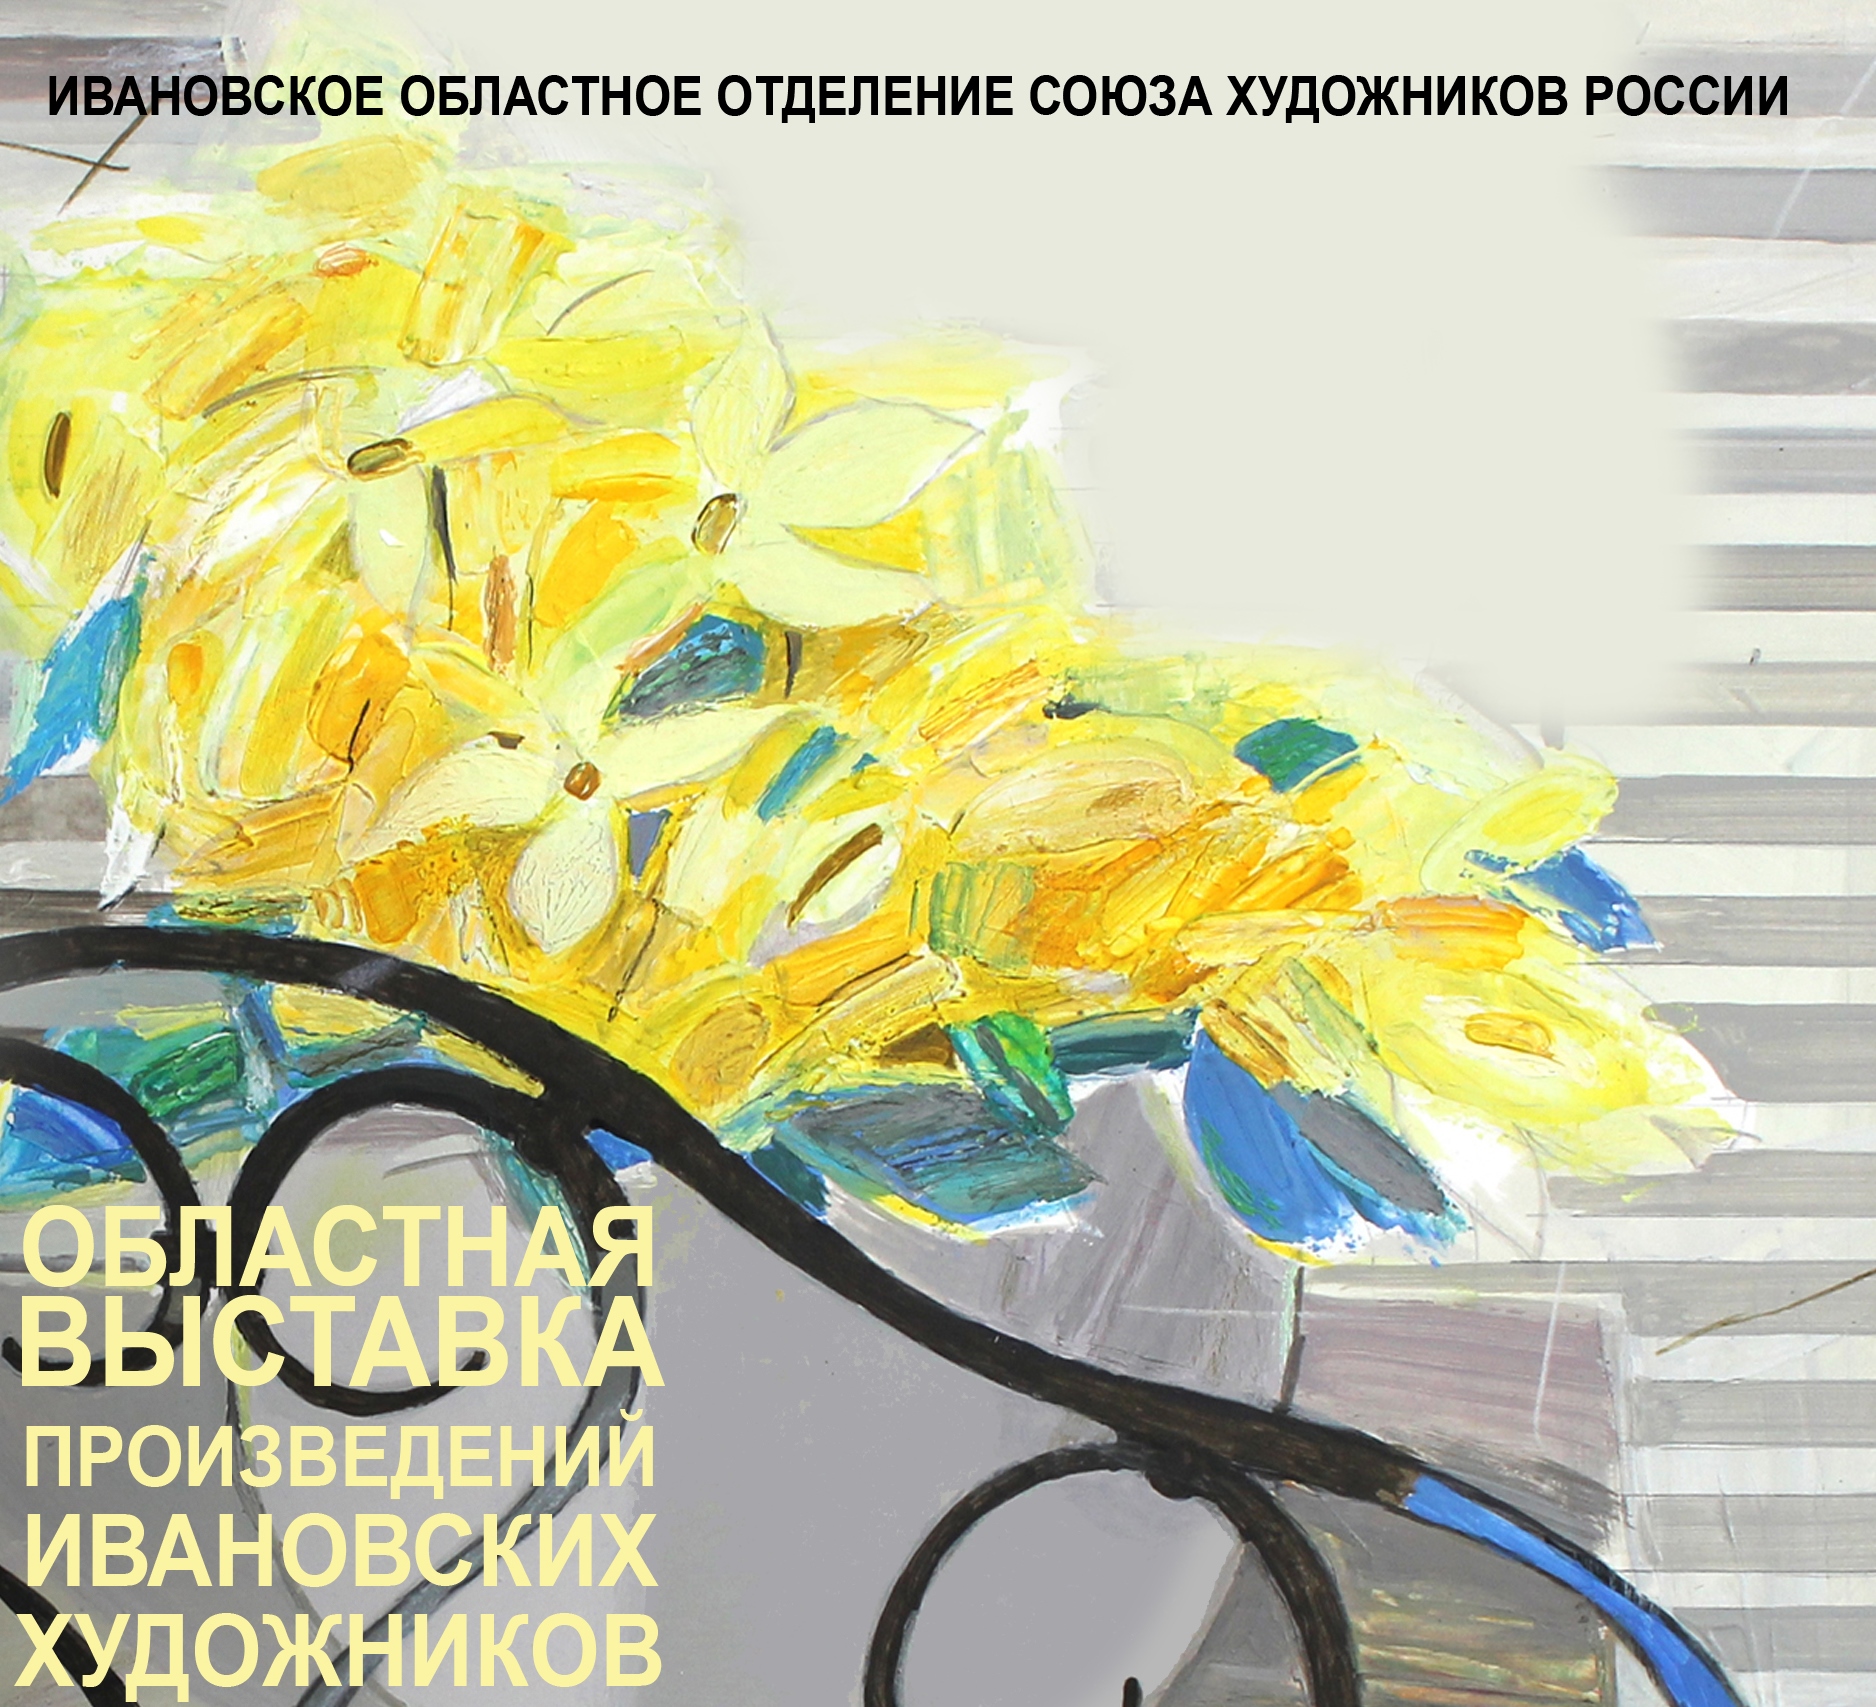 В Иванове откроется областная выставка "Предчувствие весны"